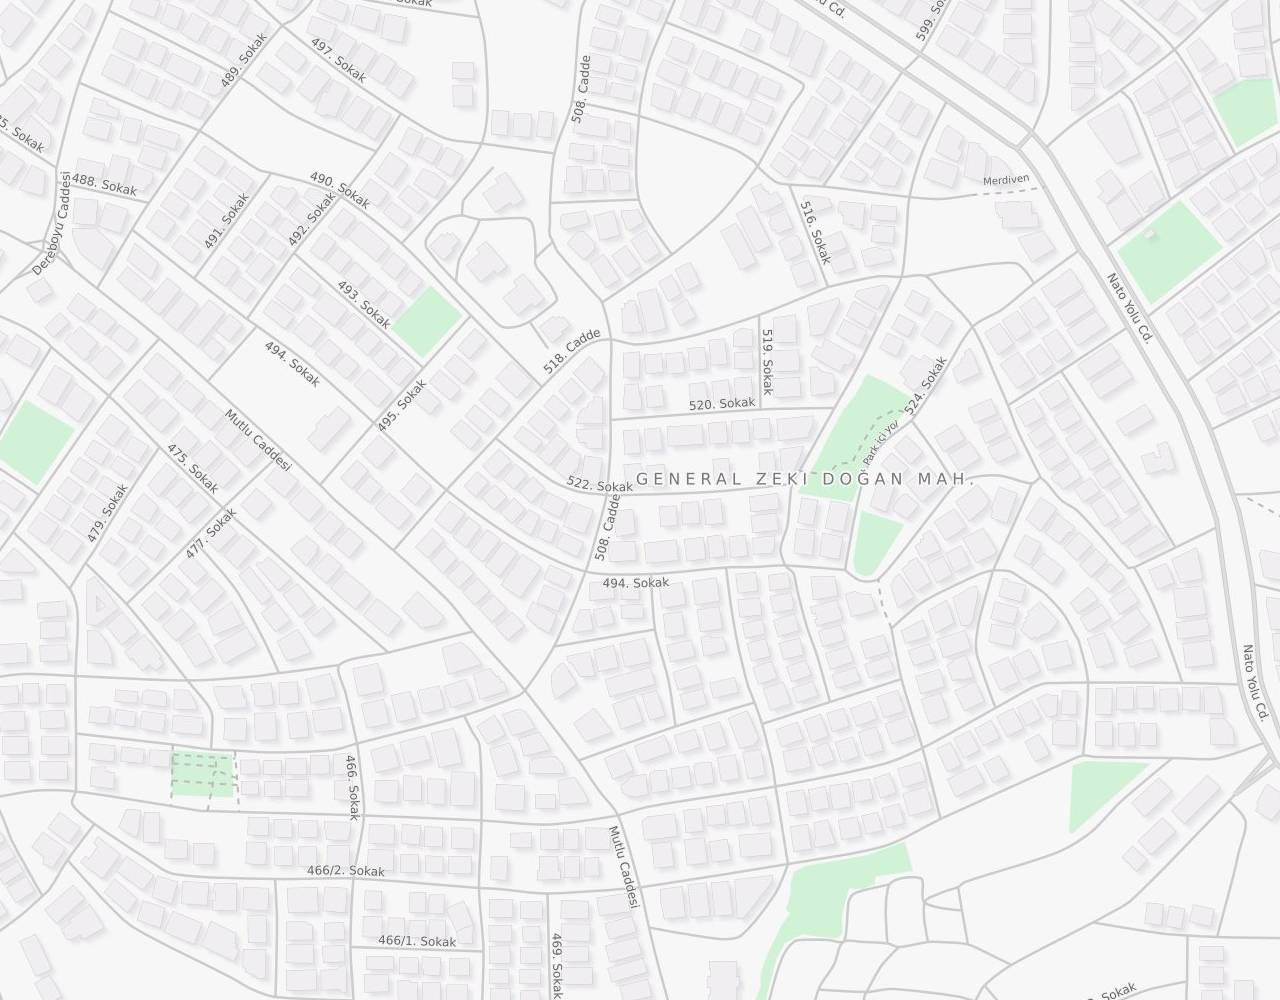 Ankara Mamak General Zeki Doğan Mahallesi 522 Sok harita